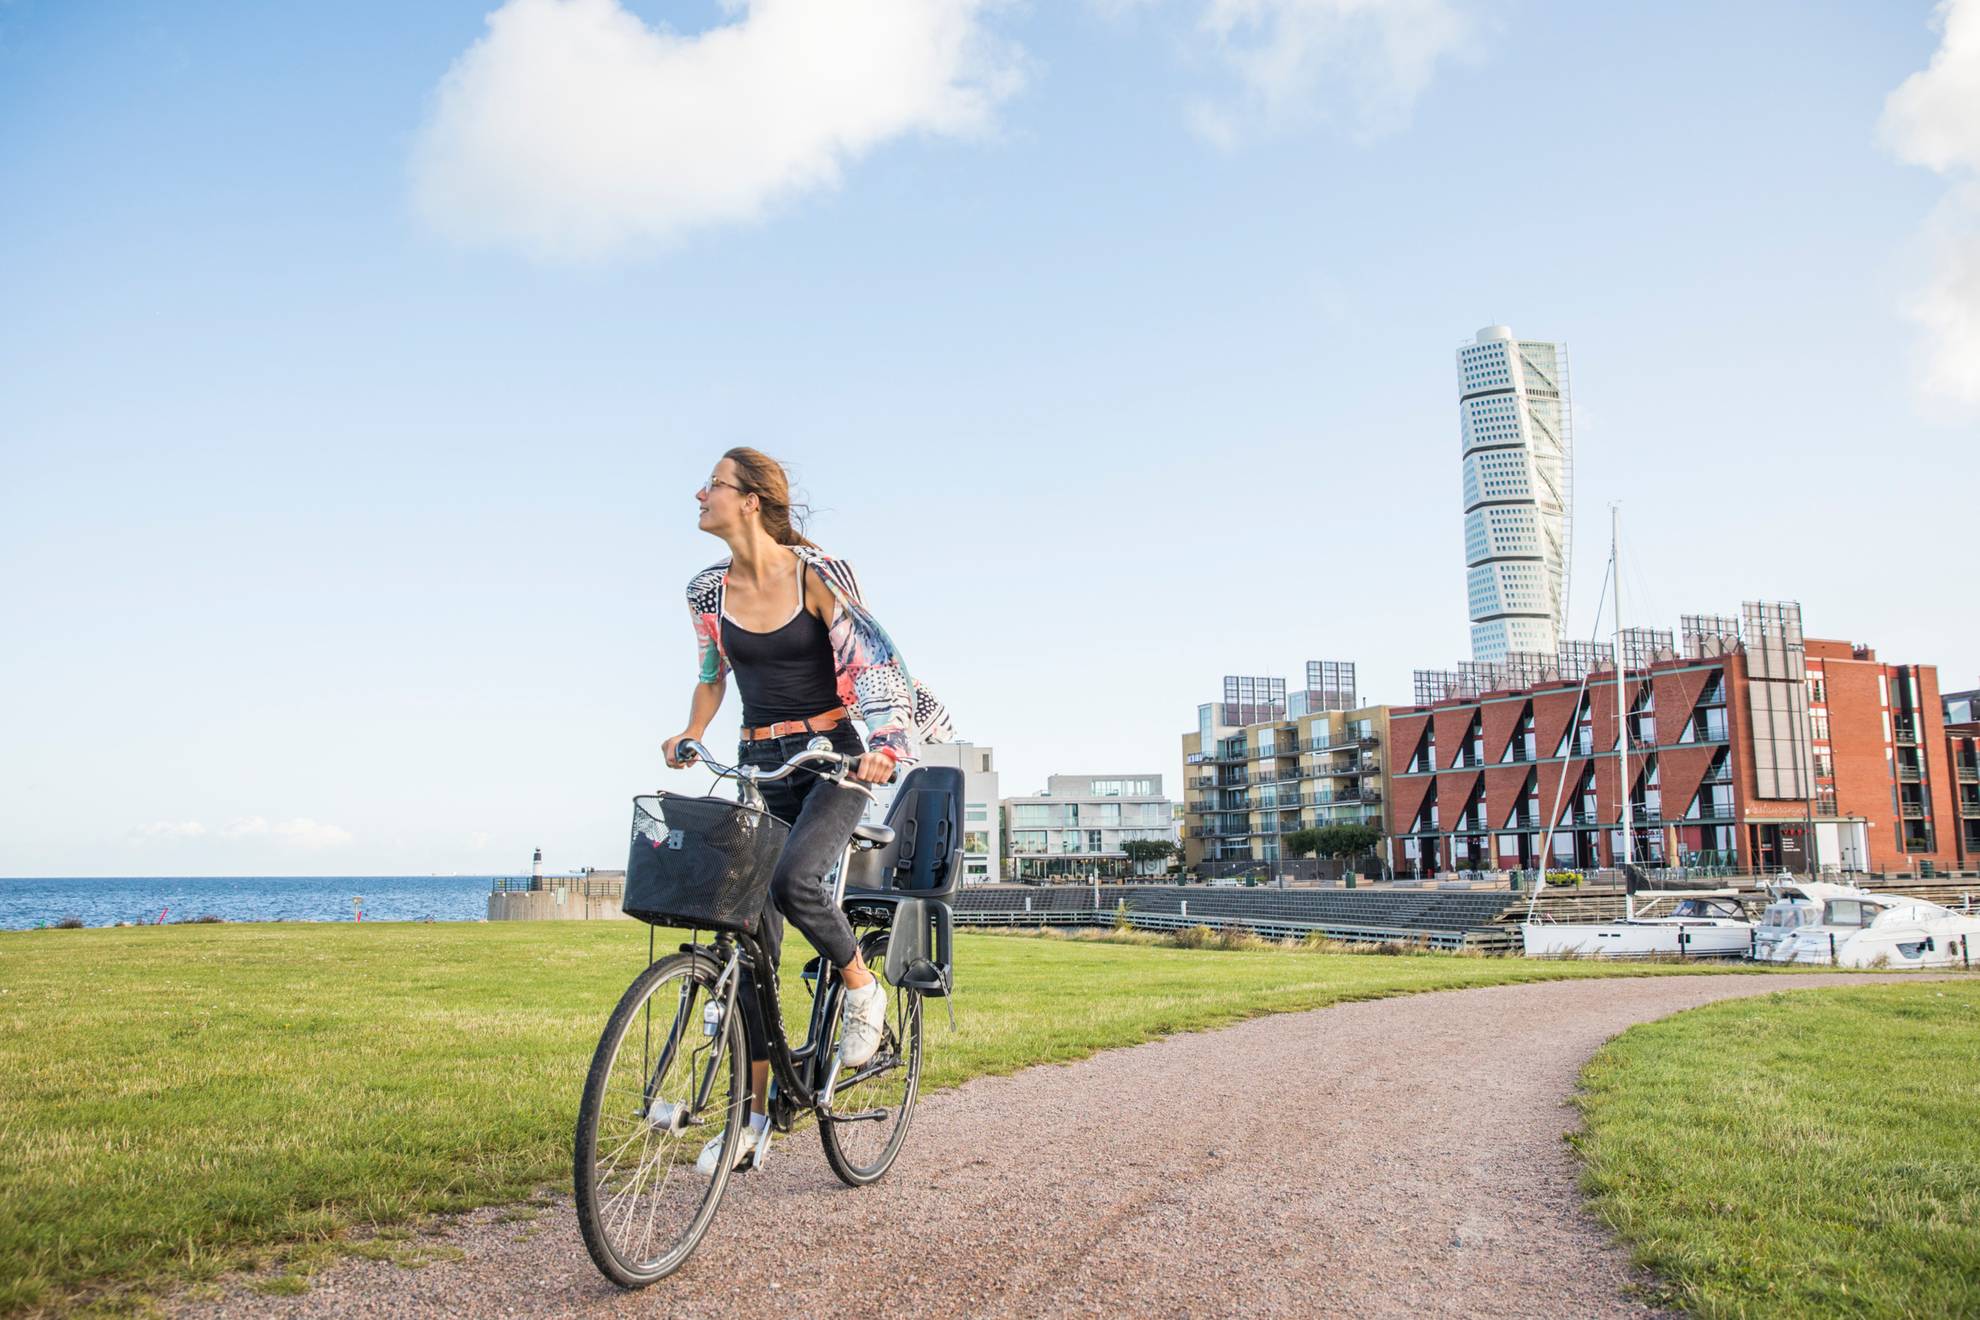 Eine Frau fährt mit dem Fahrrad auf einem Gehweg, dahinter siehst du ein Wohngebiet am Meer und in der Mitte einen Wolkenkratzer.